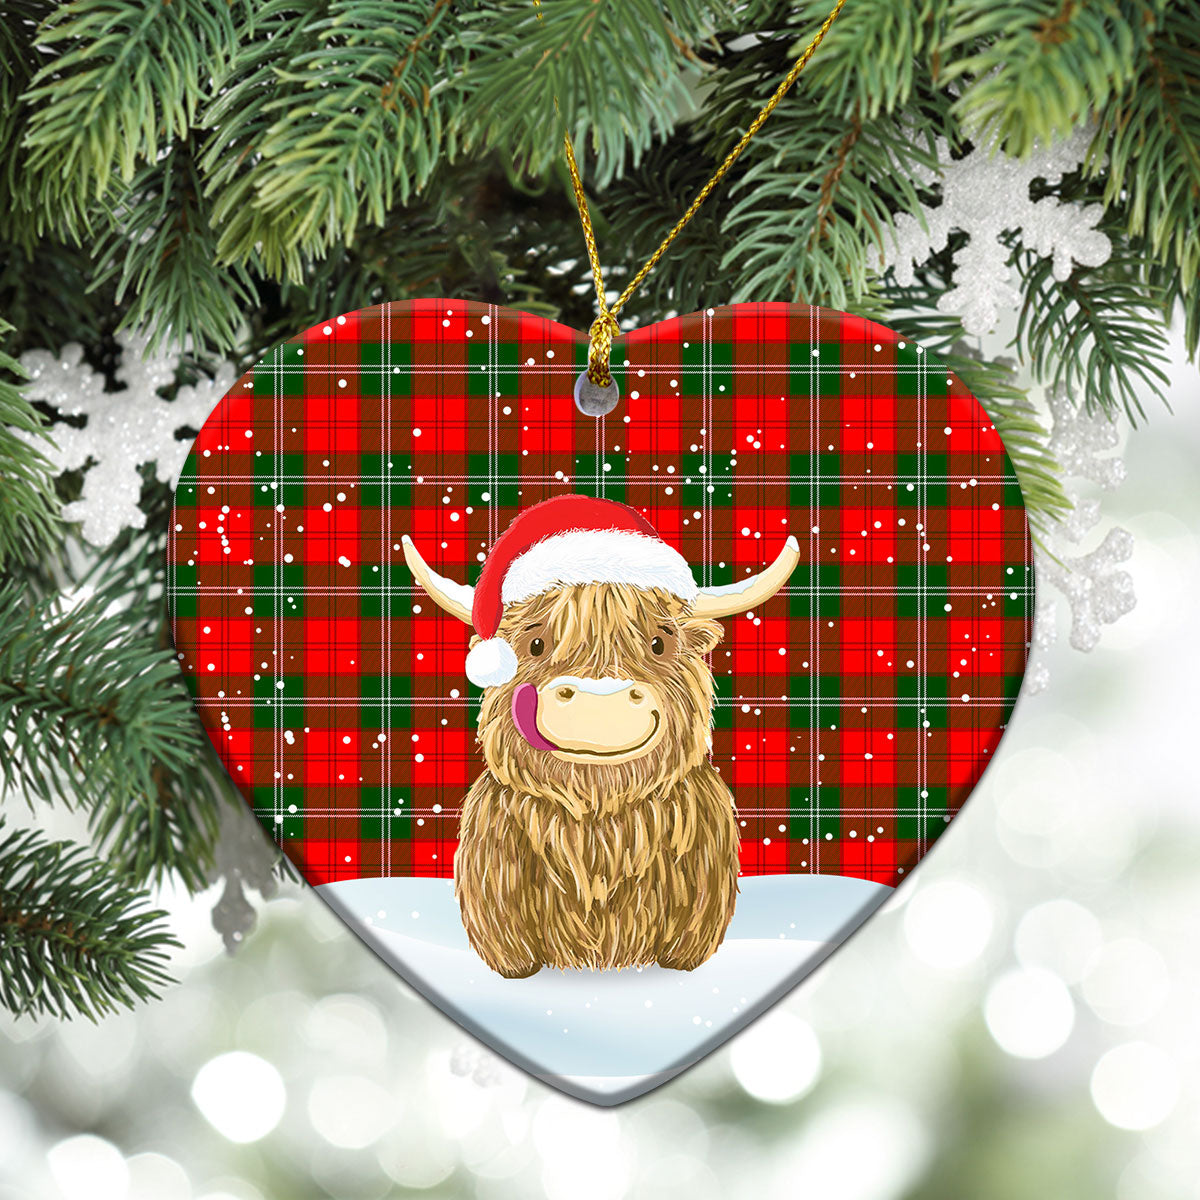 Lennox (Lennox Kincaid) Tartan Christmas Ceramic Ornament - Highland Cows Style